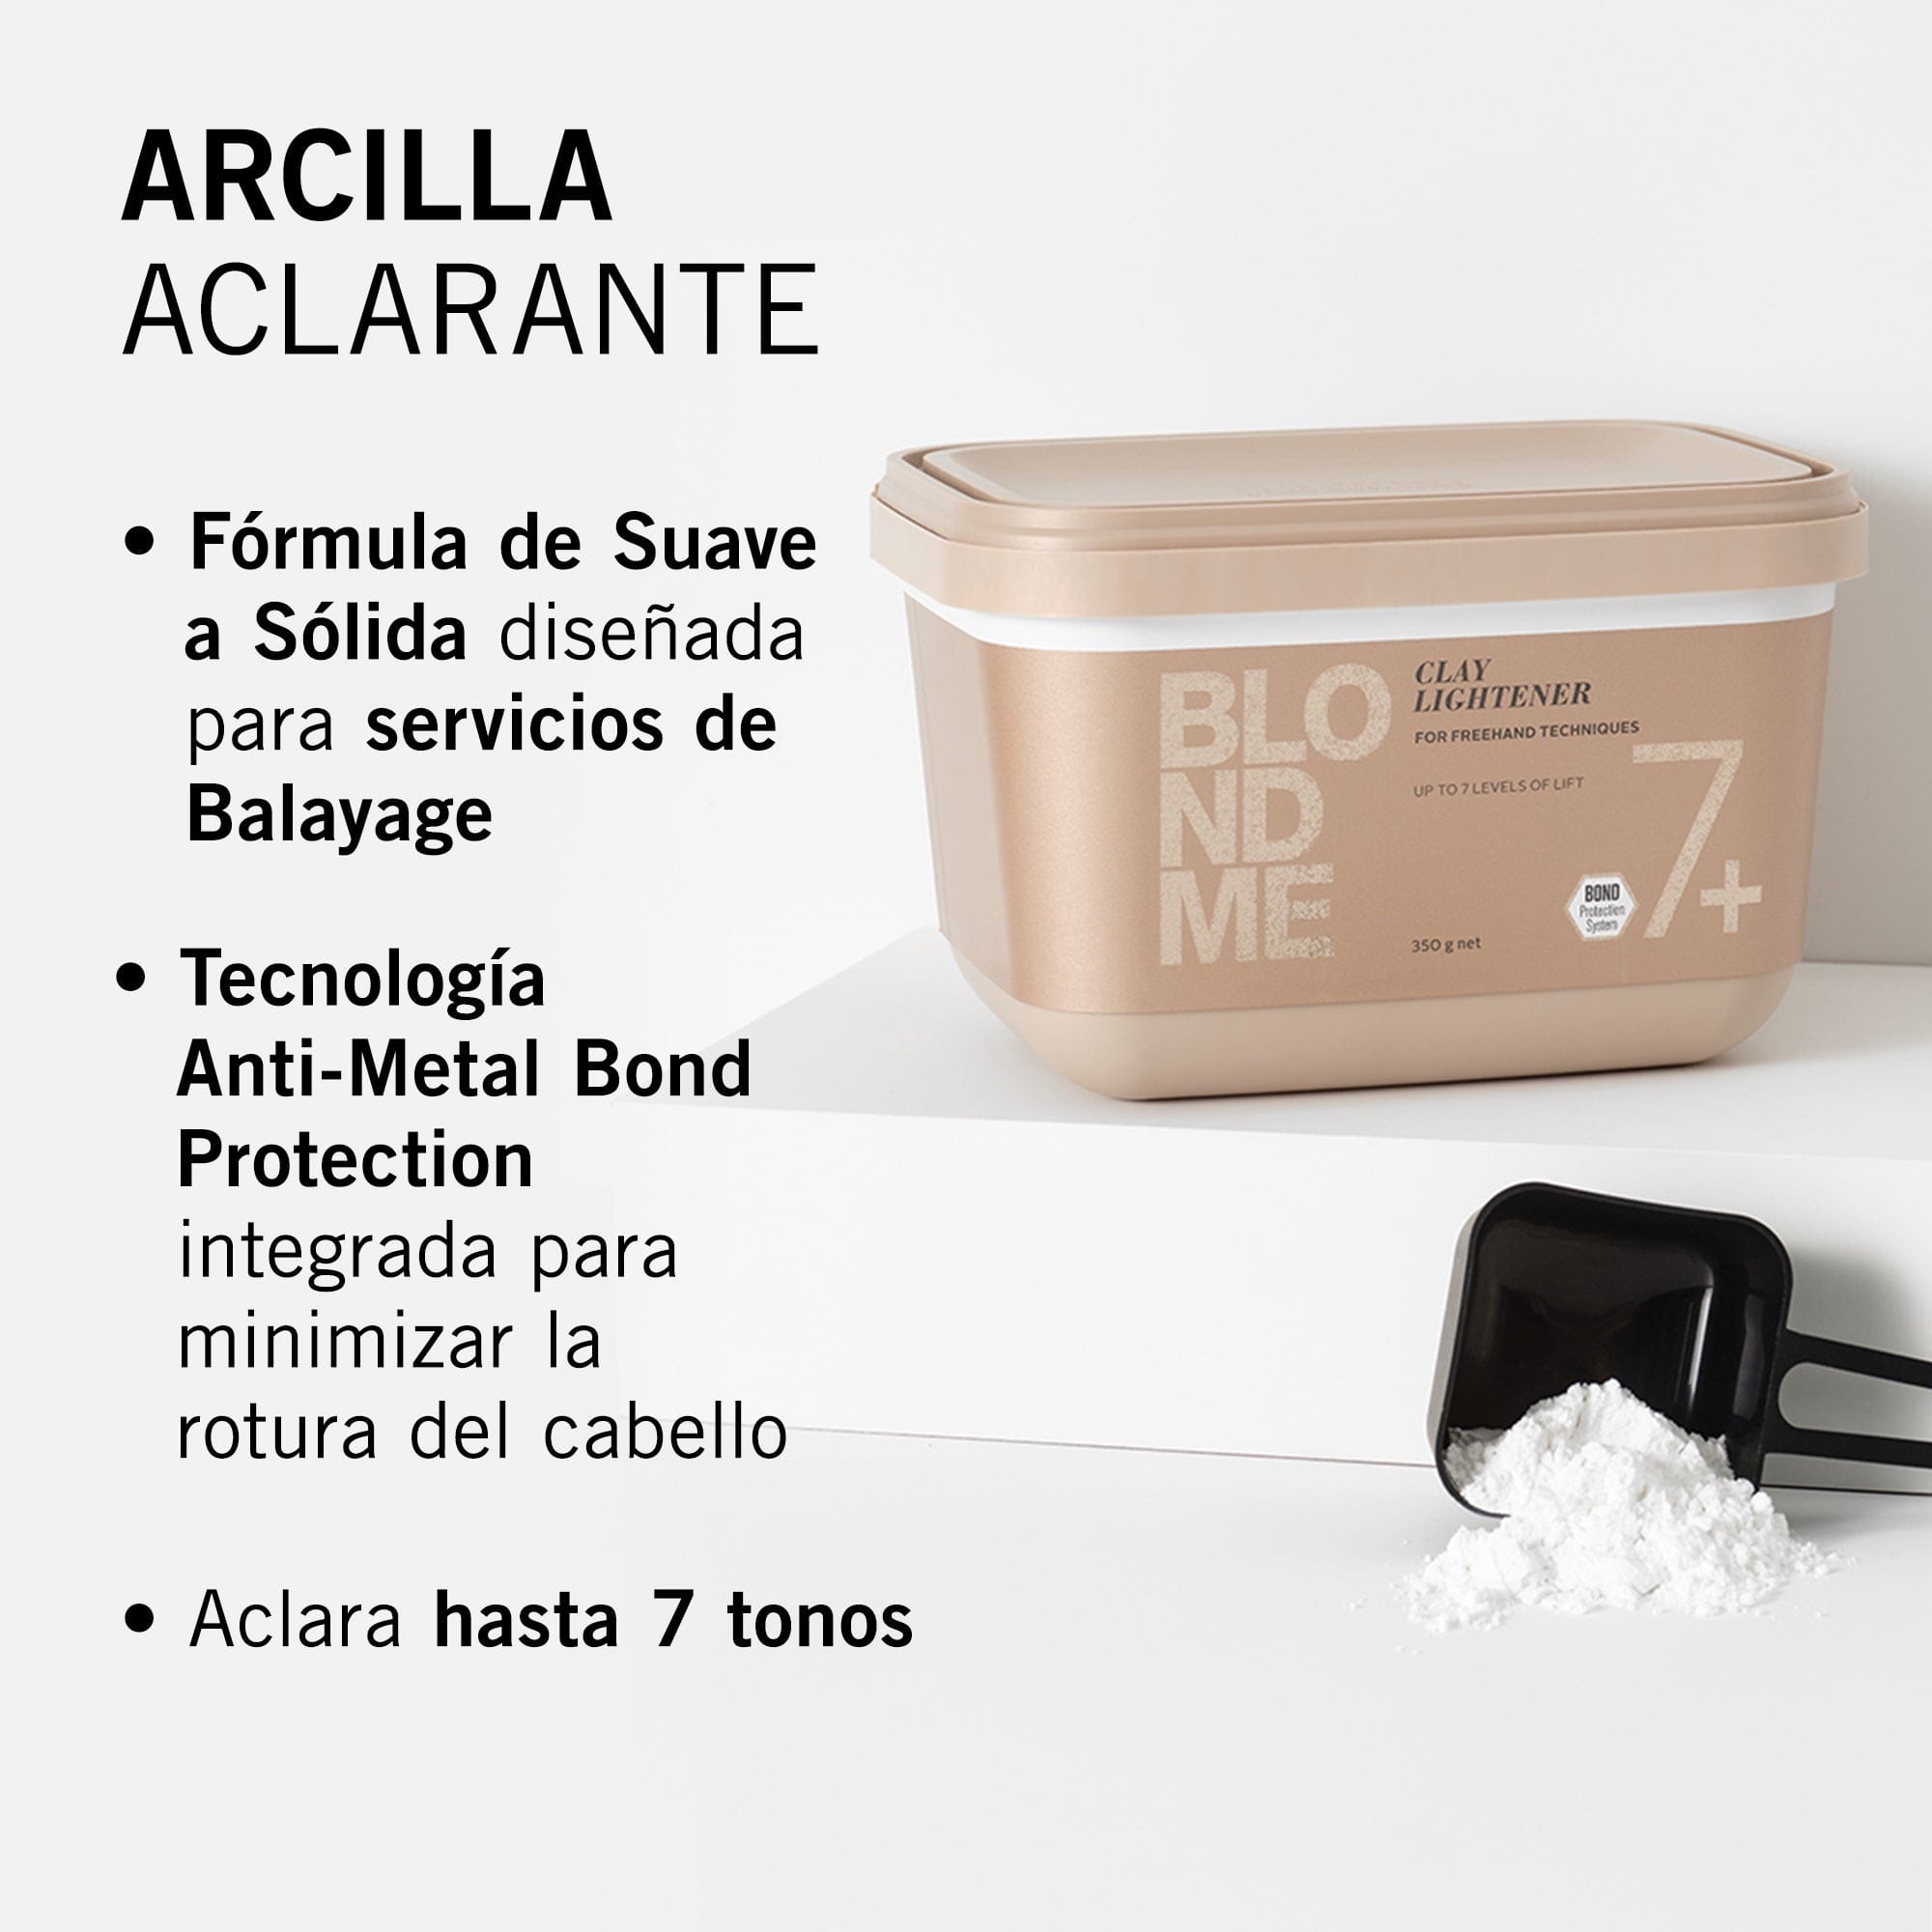 BLONDME Decoloración BLONDME Arcilla Aclarante 350g Roberta Beauty Club Tienda Online Productos de Peluqueria